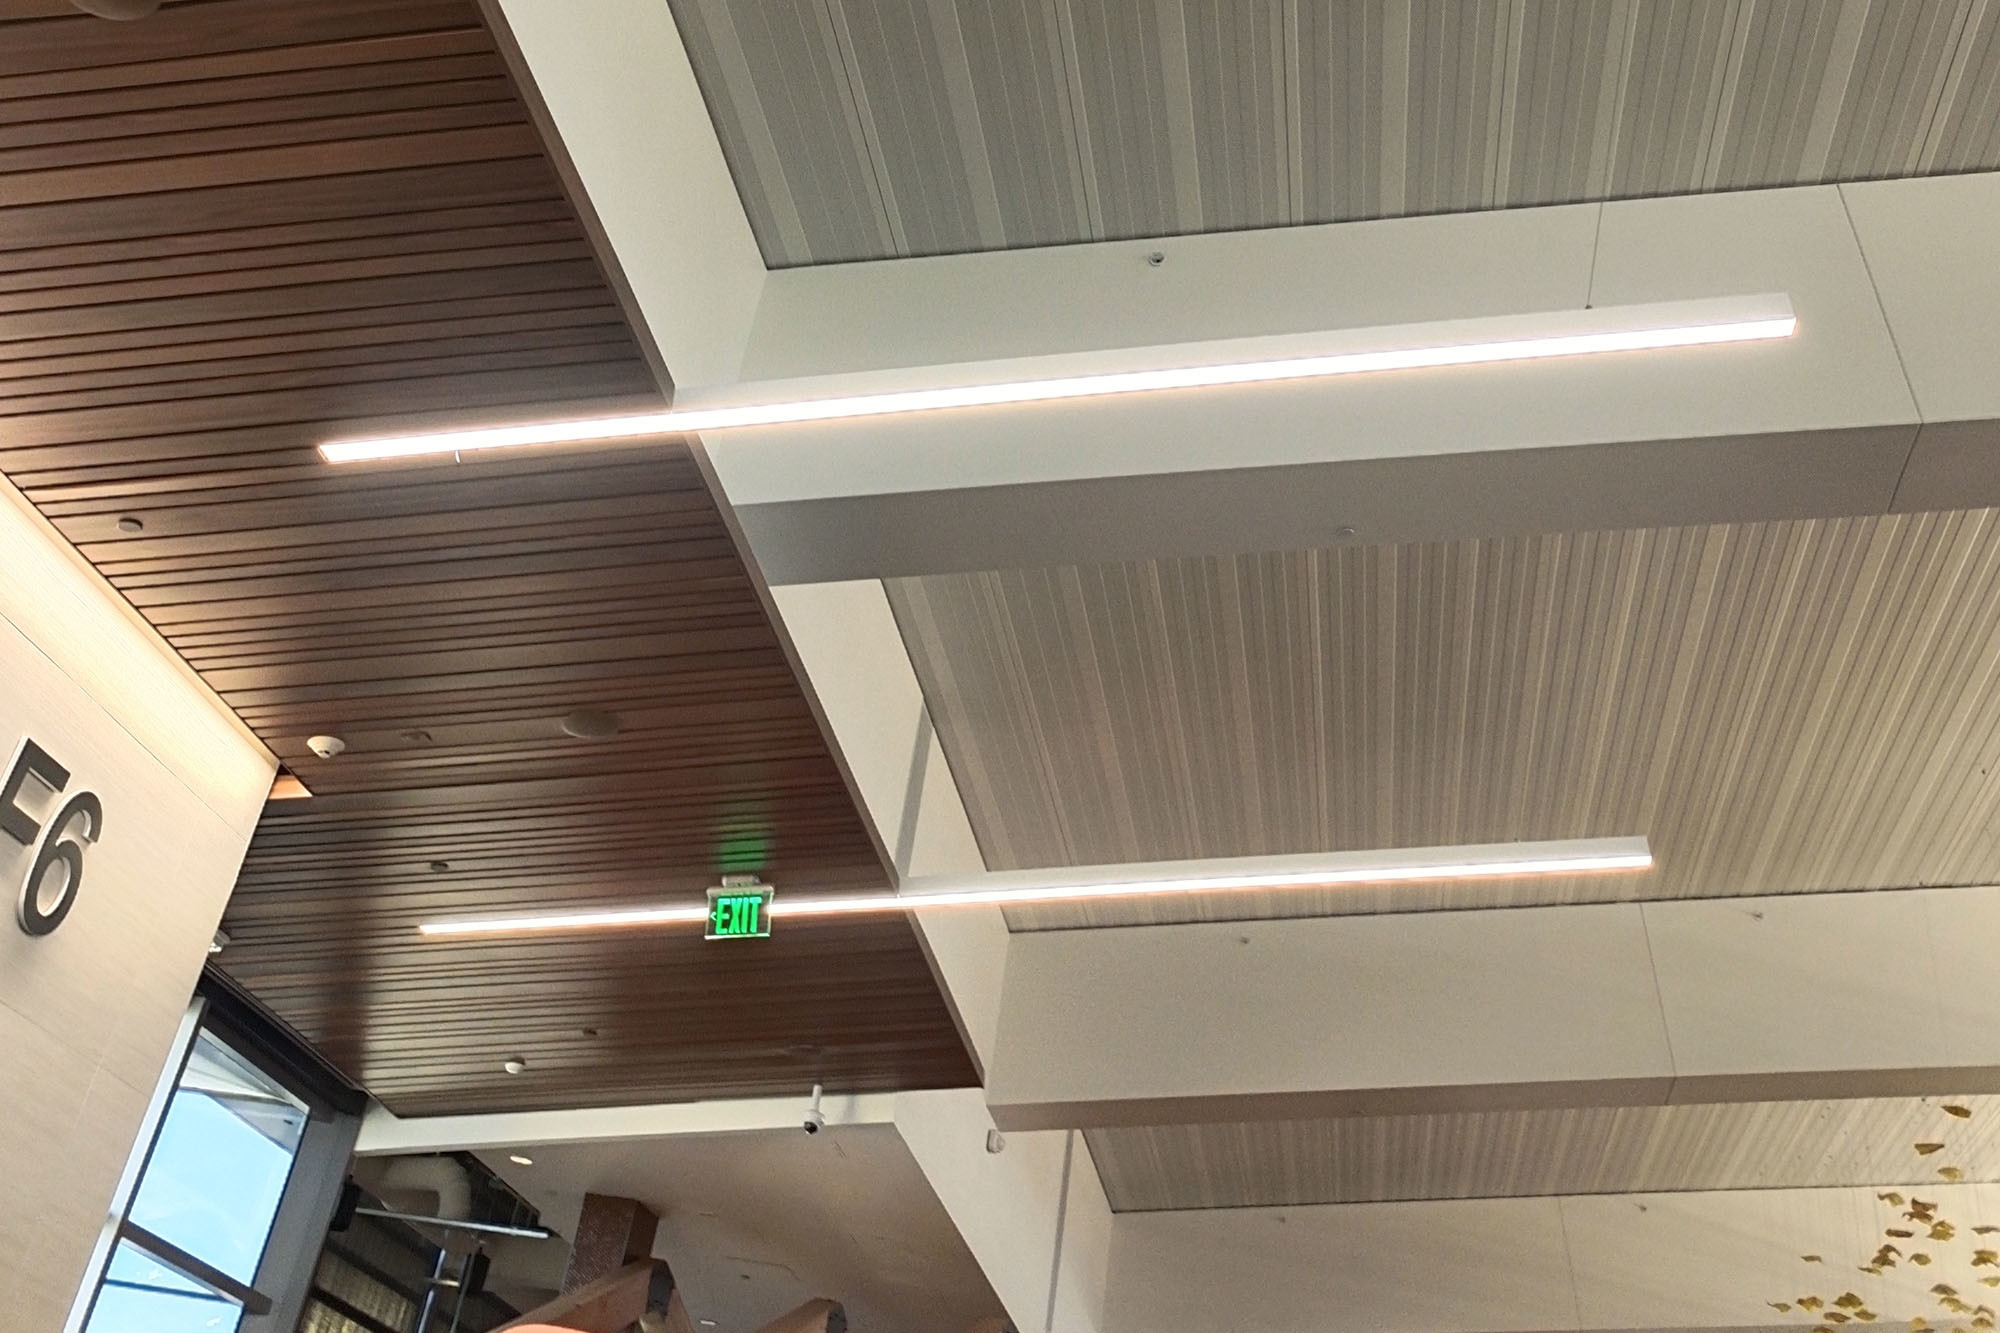 সম্পর্কে সর্বশেষ কোম্পানী কেস LED লিনিয়ার স্ট্রিপ লাইট অ্যাপ্লিকেশন